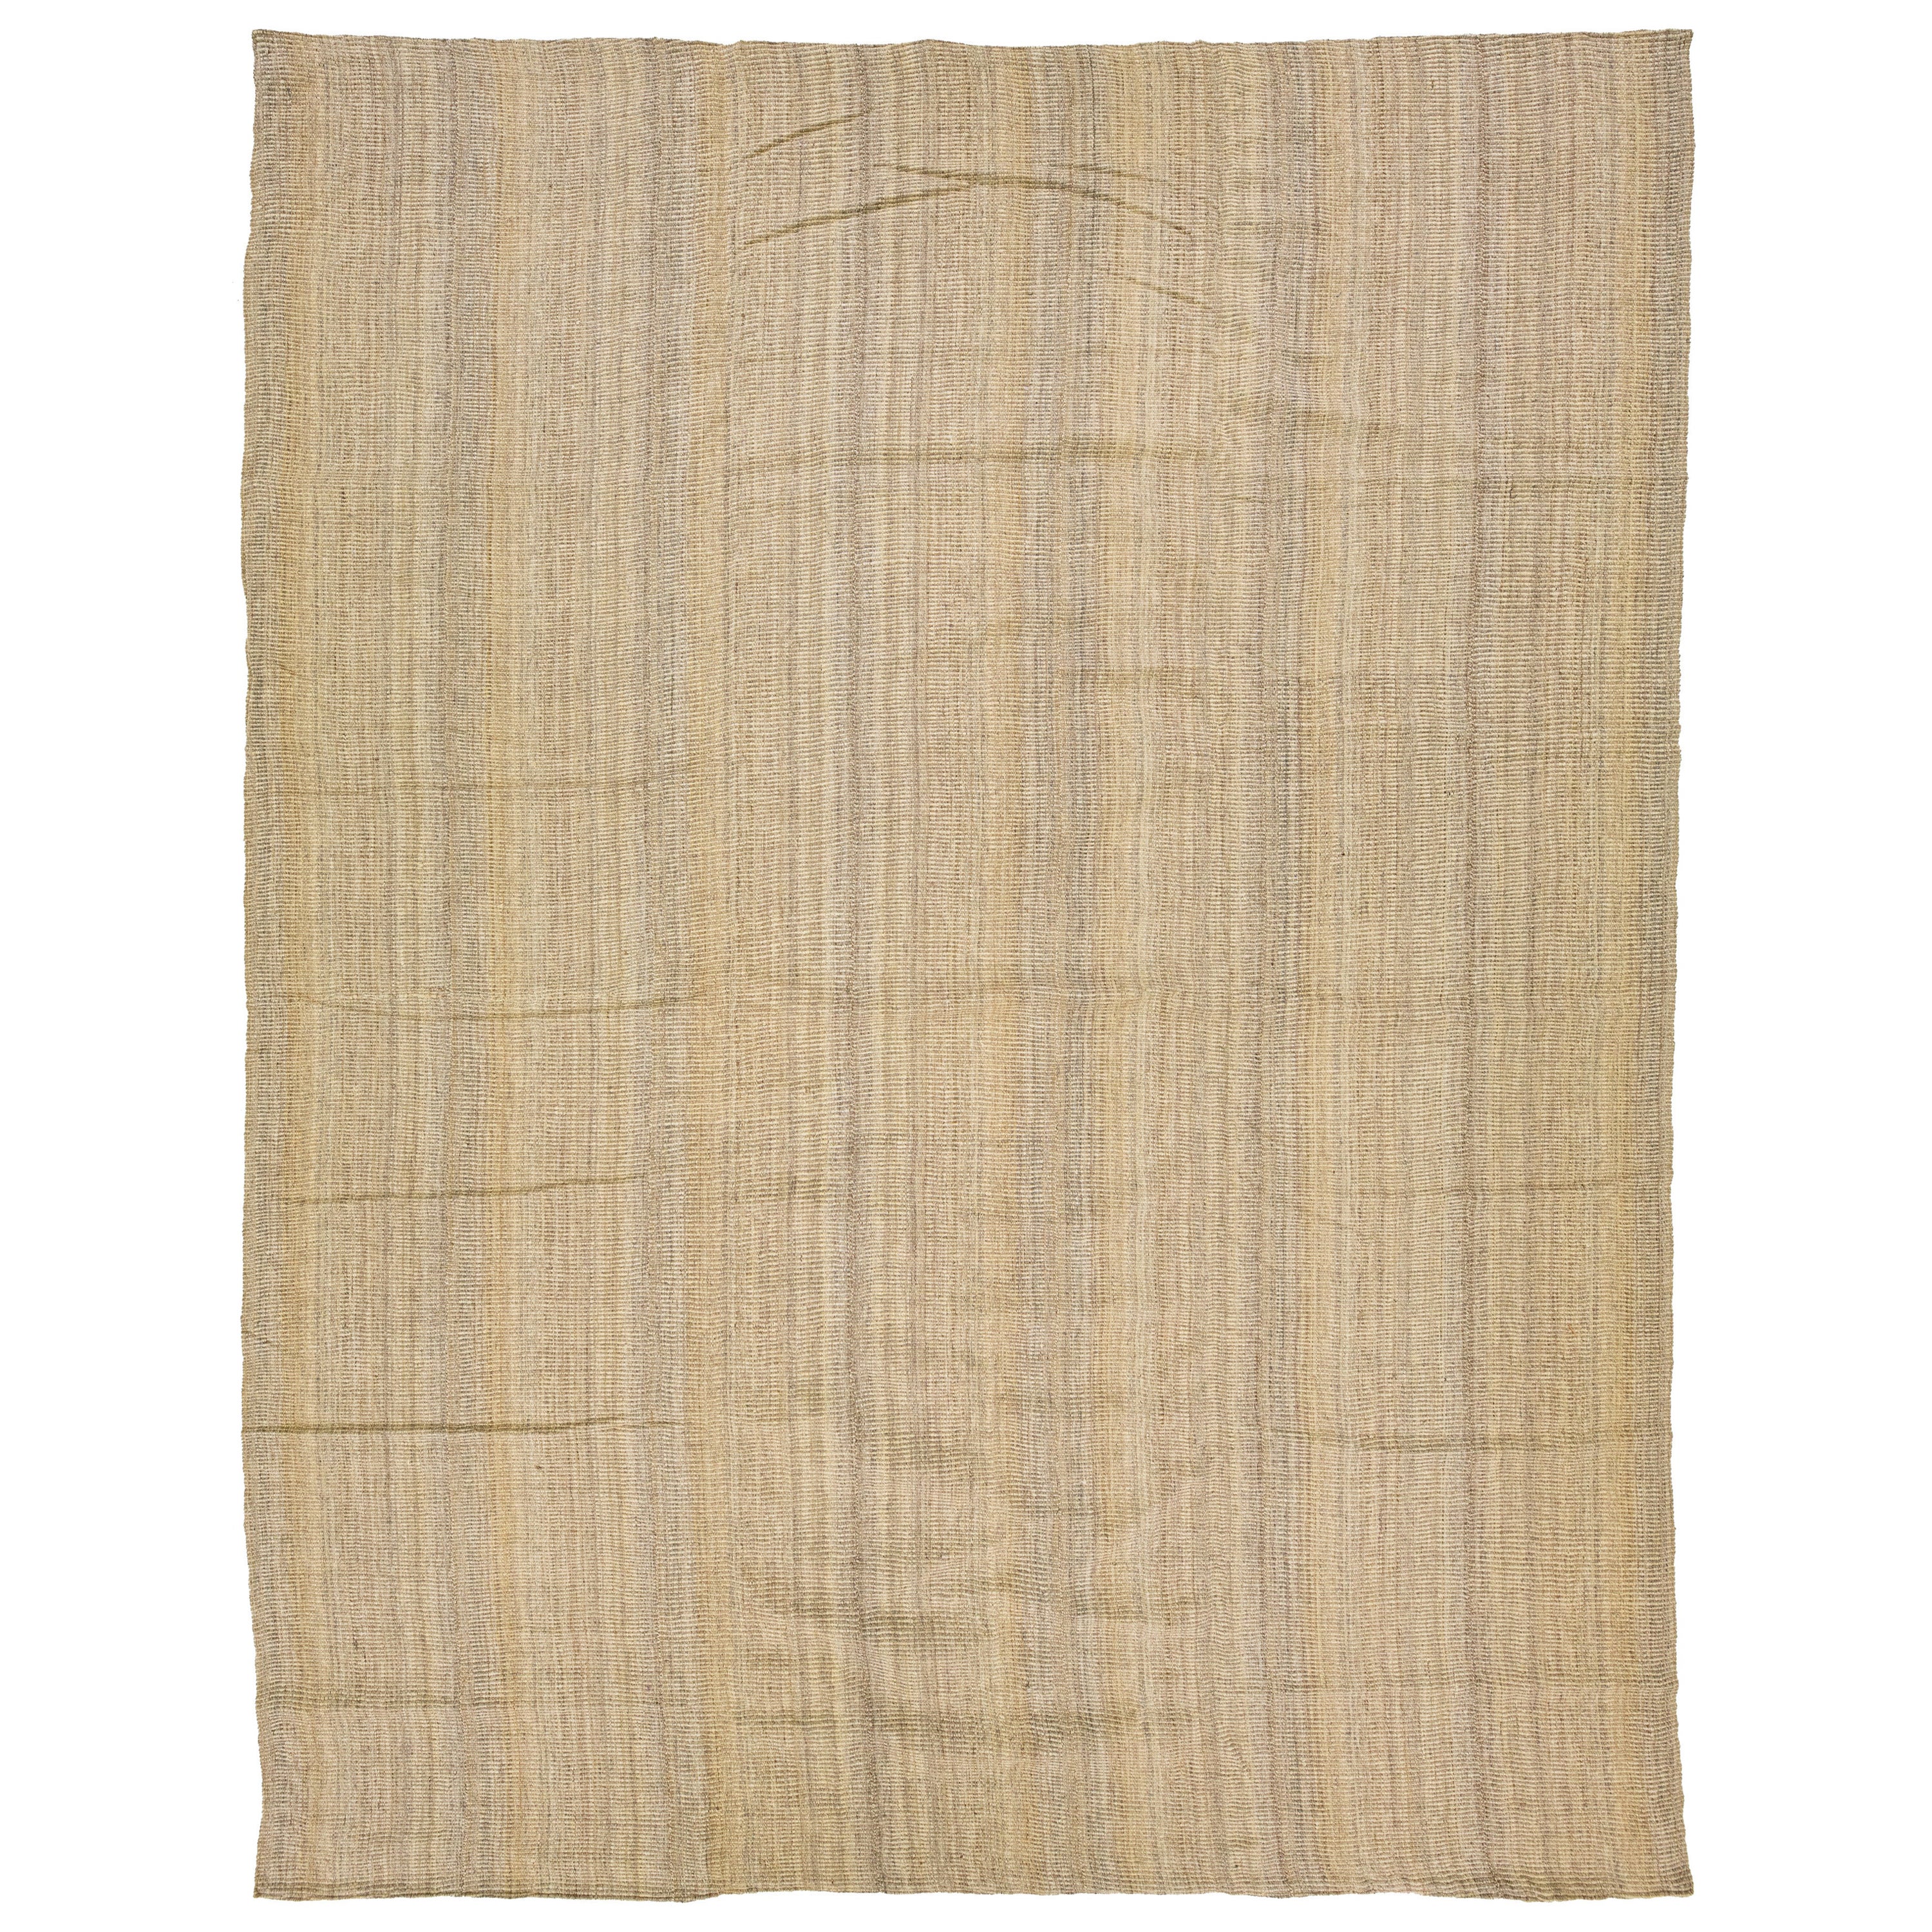 Tapis kilim moderne beige tissé à plat avec motif de rayures 